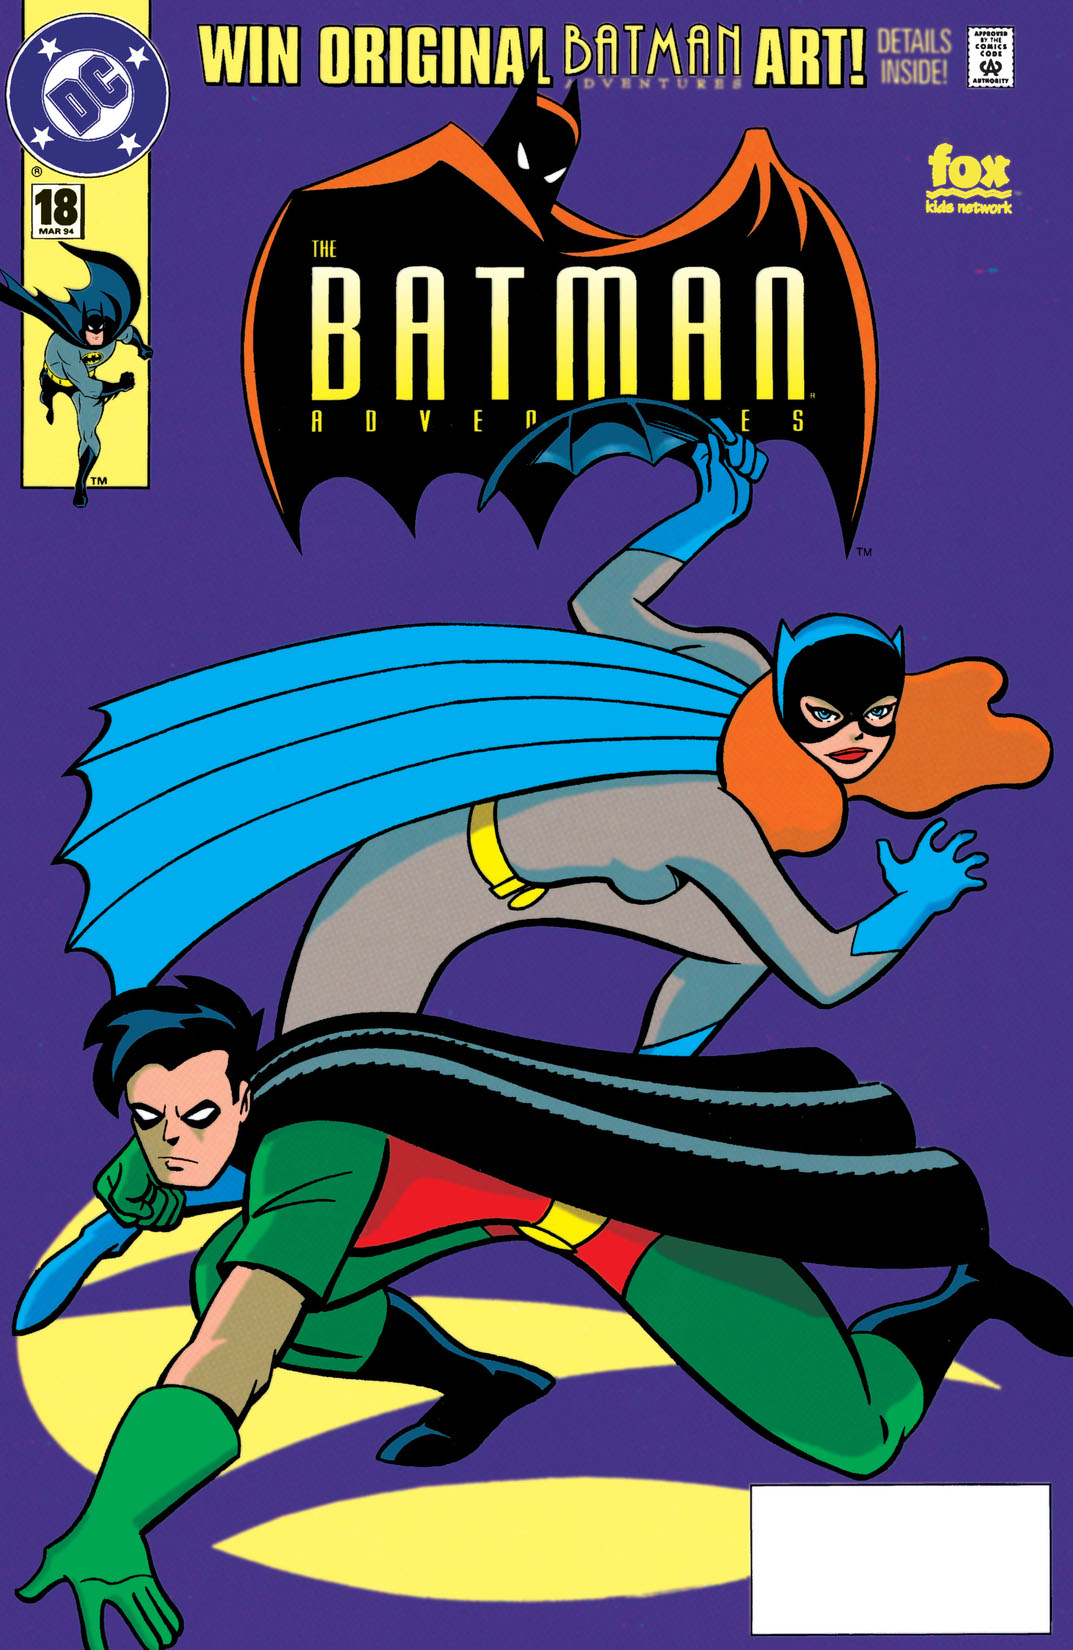 The Batman Adventures #18 preview images